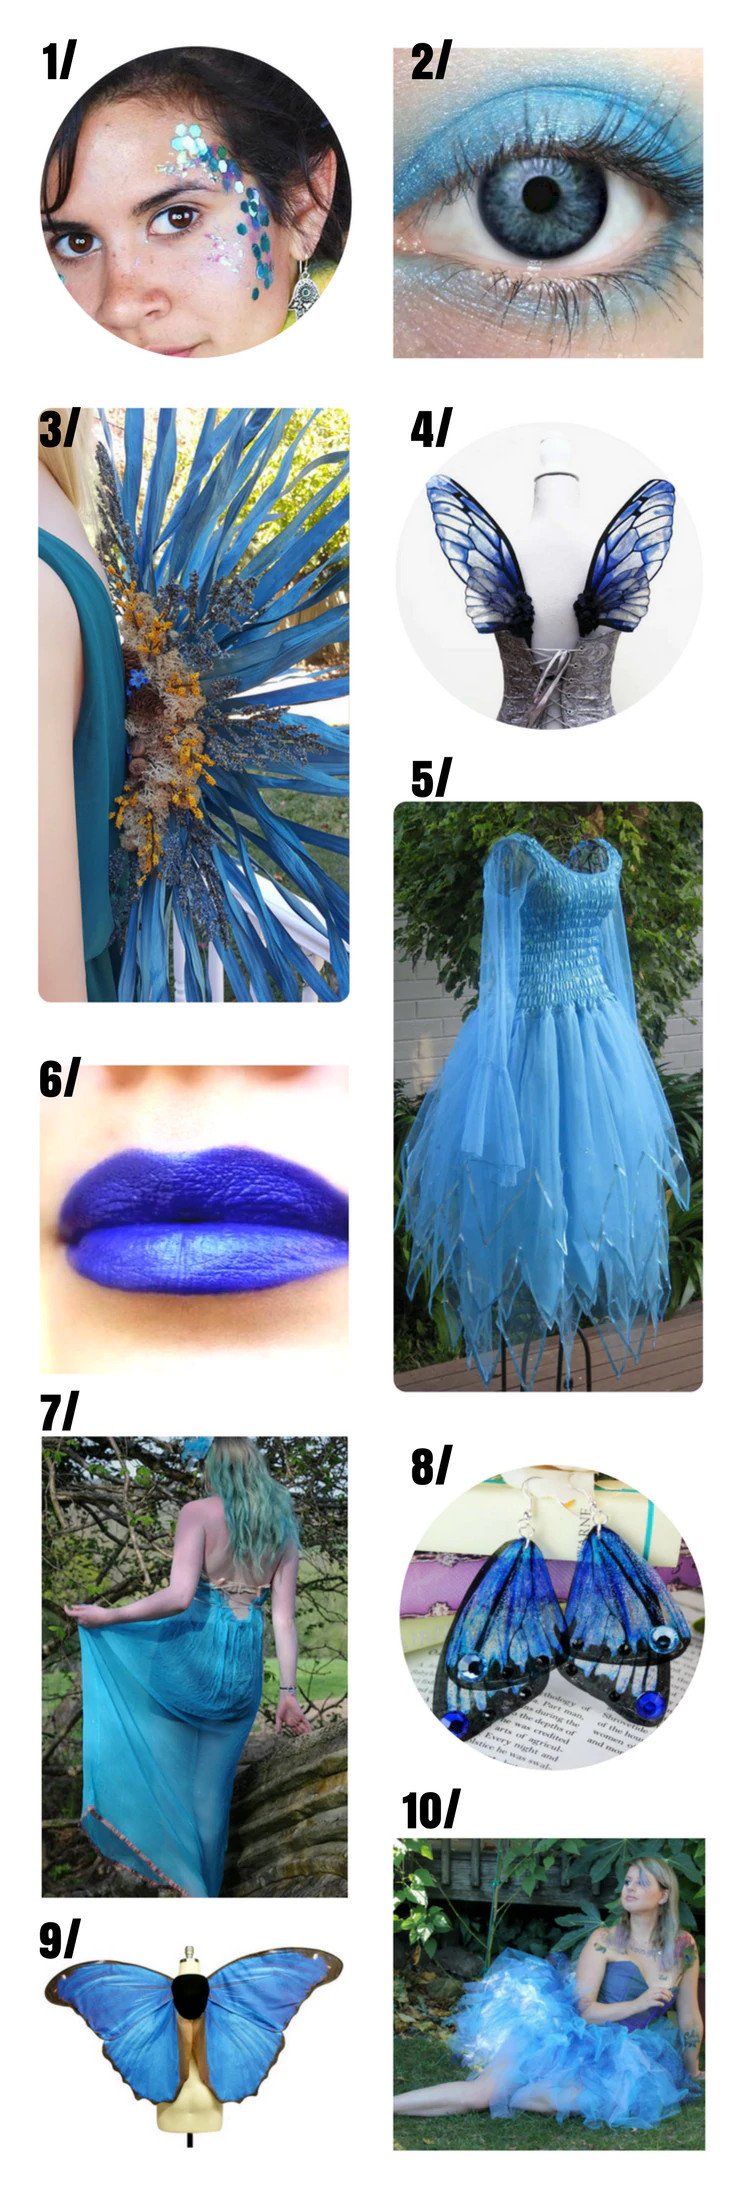 Blue fairy costume for women.